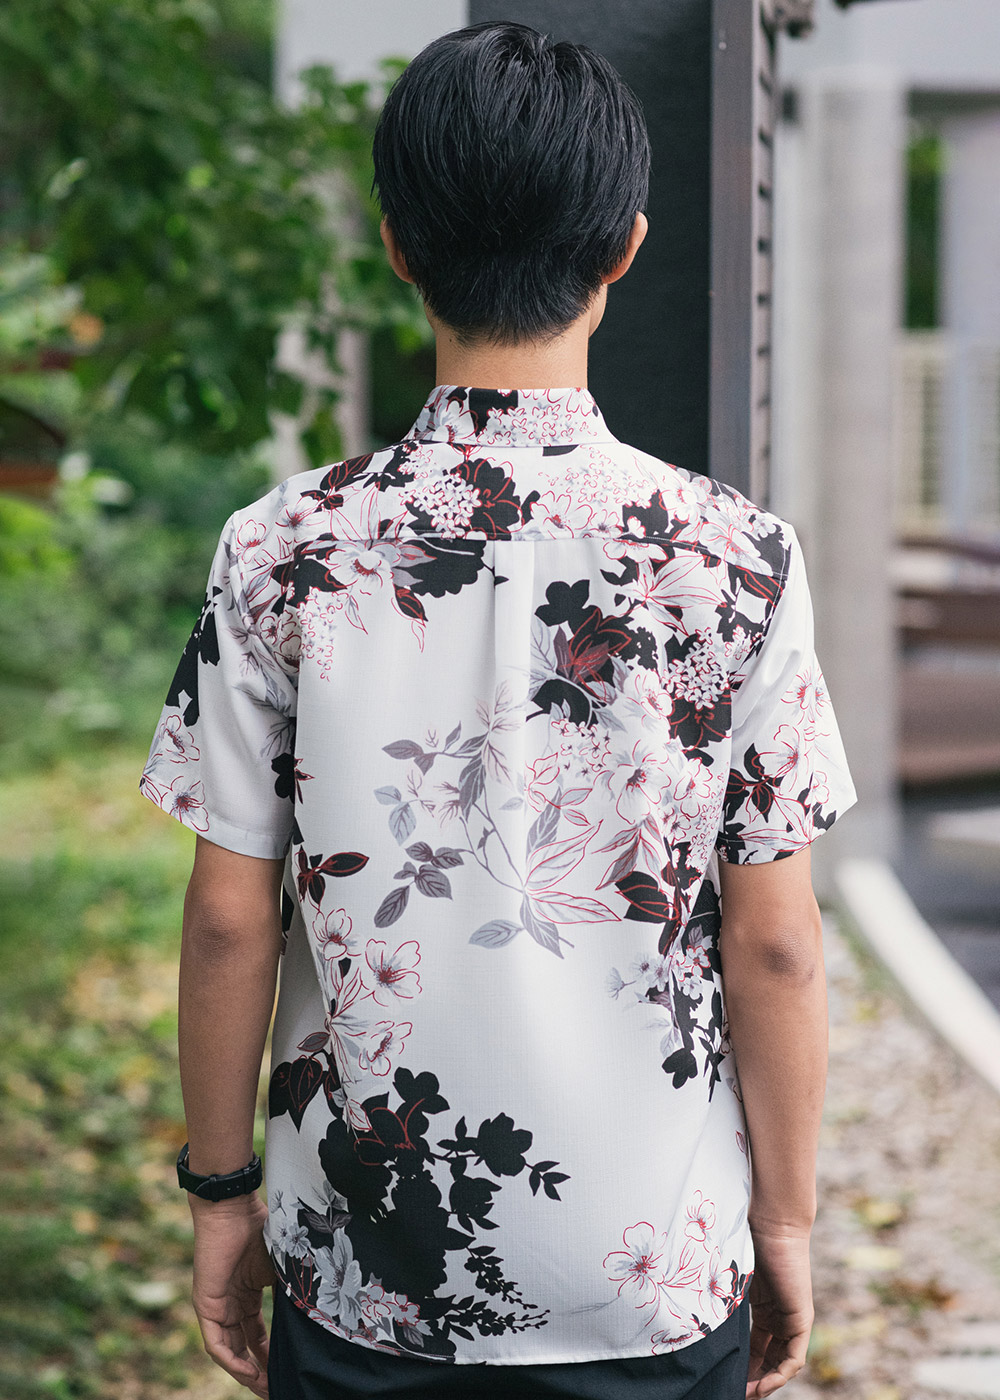 かりゆしウェア（沖縄版アロハシャツ） MAJUN - イジュの花